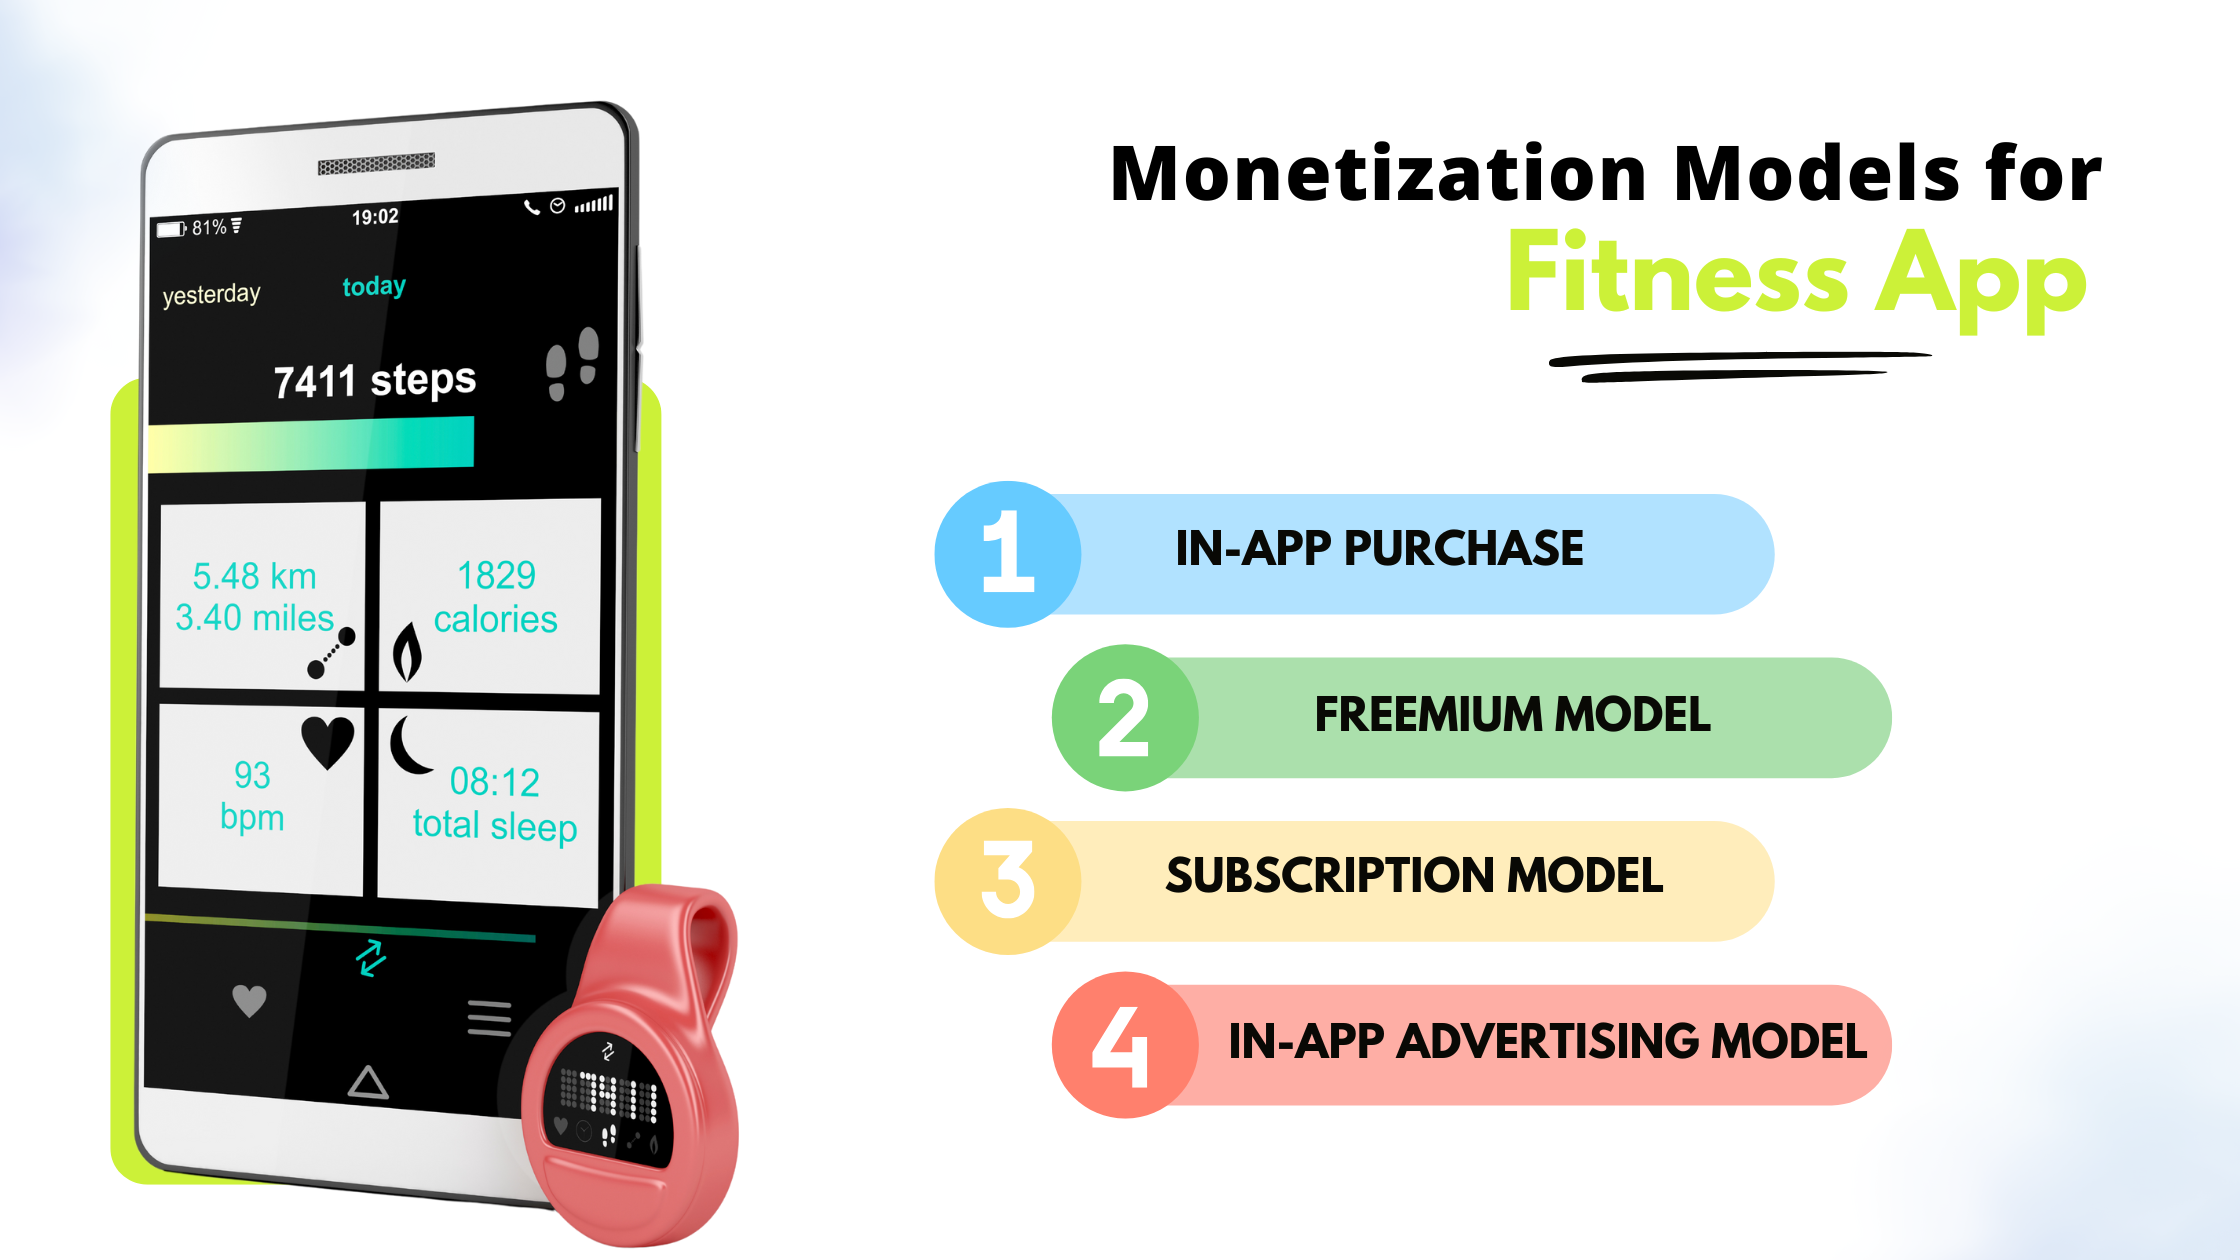 Monetization Models for Fitness App